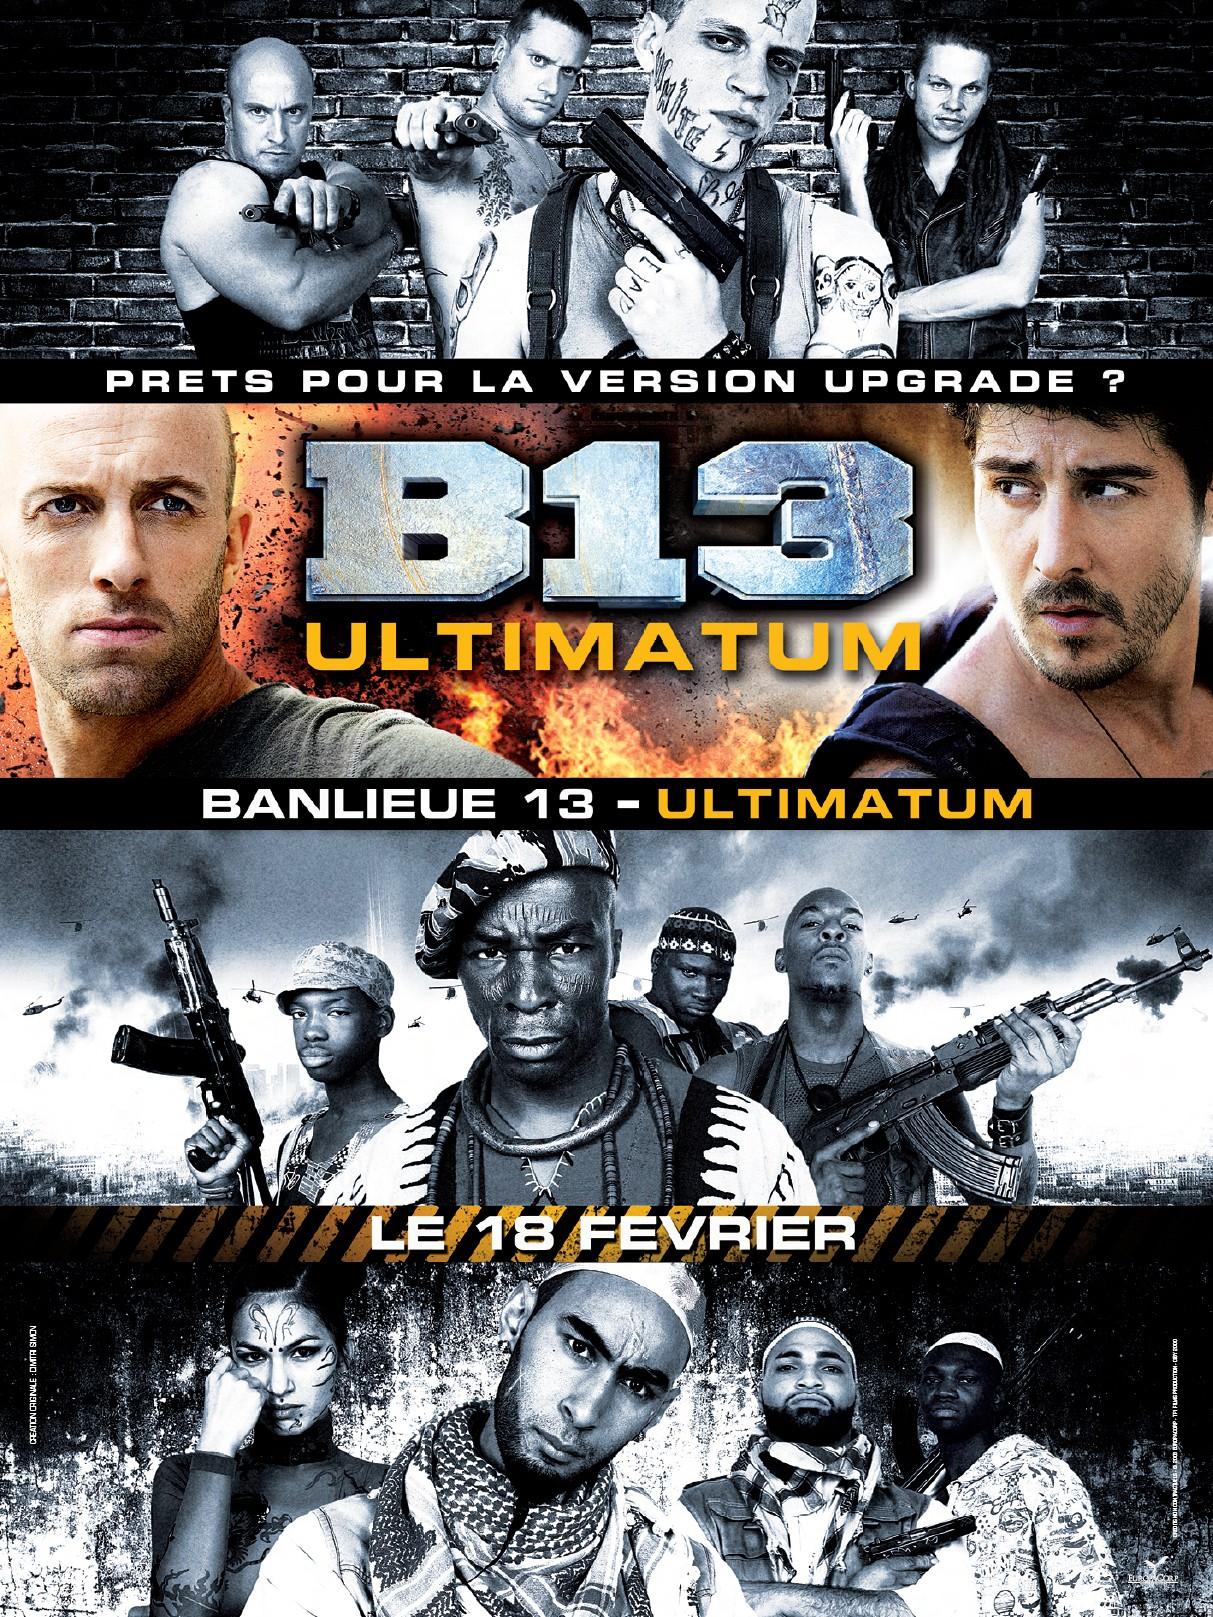 دانلود فیلم Banlieue 13 Ultimatum – شهرک B13 اولتیماتوم با دوبله فارسی و کیفیت اورجینال